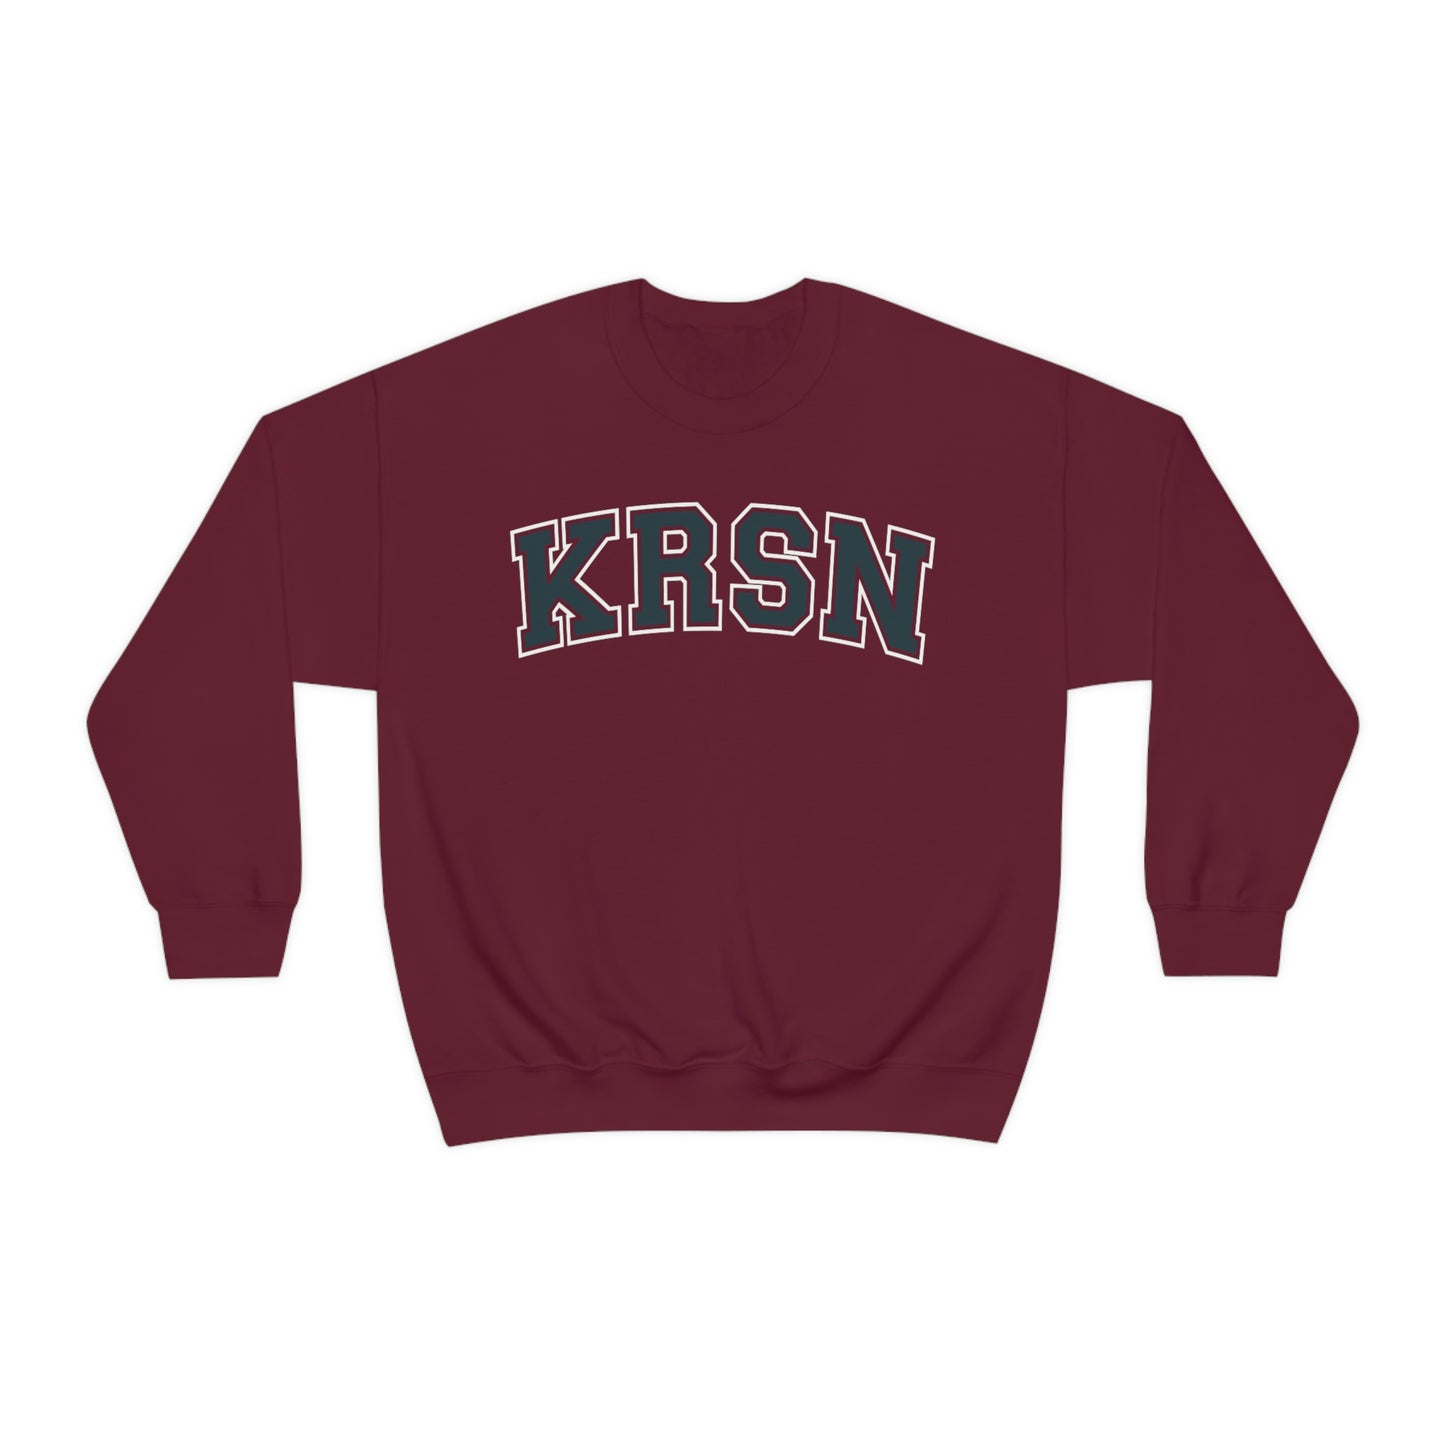 KRSN Crewneck Sweatshirt Volleyball College Nekomas KRSN High Volleyball Club FLY Karasuns